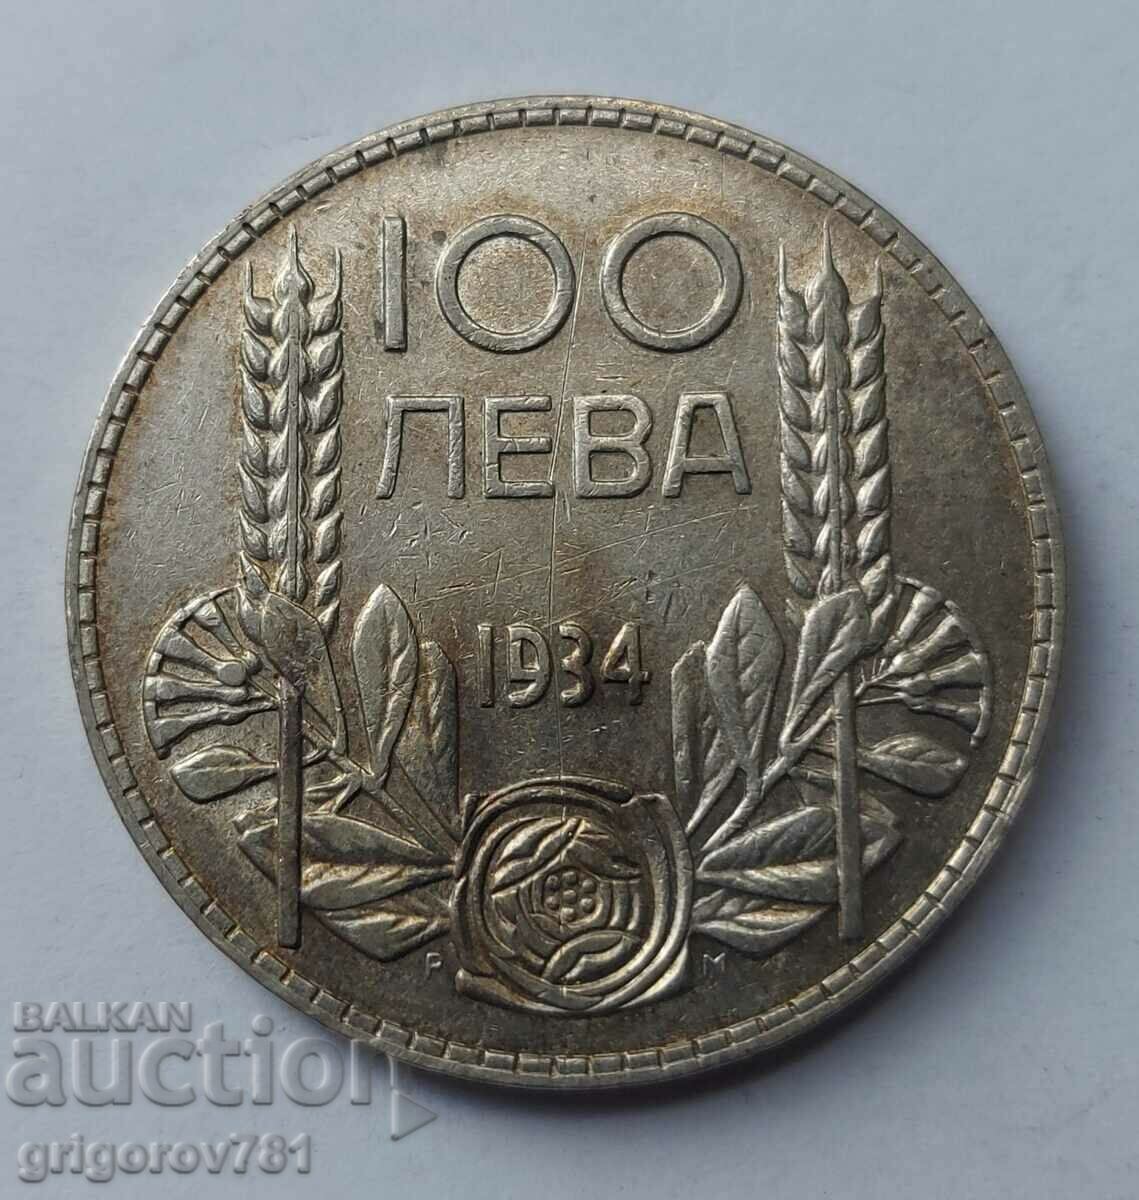 Ασήμι 100 λέβα Βουλγαρία 1934 - ασημένιο νόμισμα #42